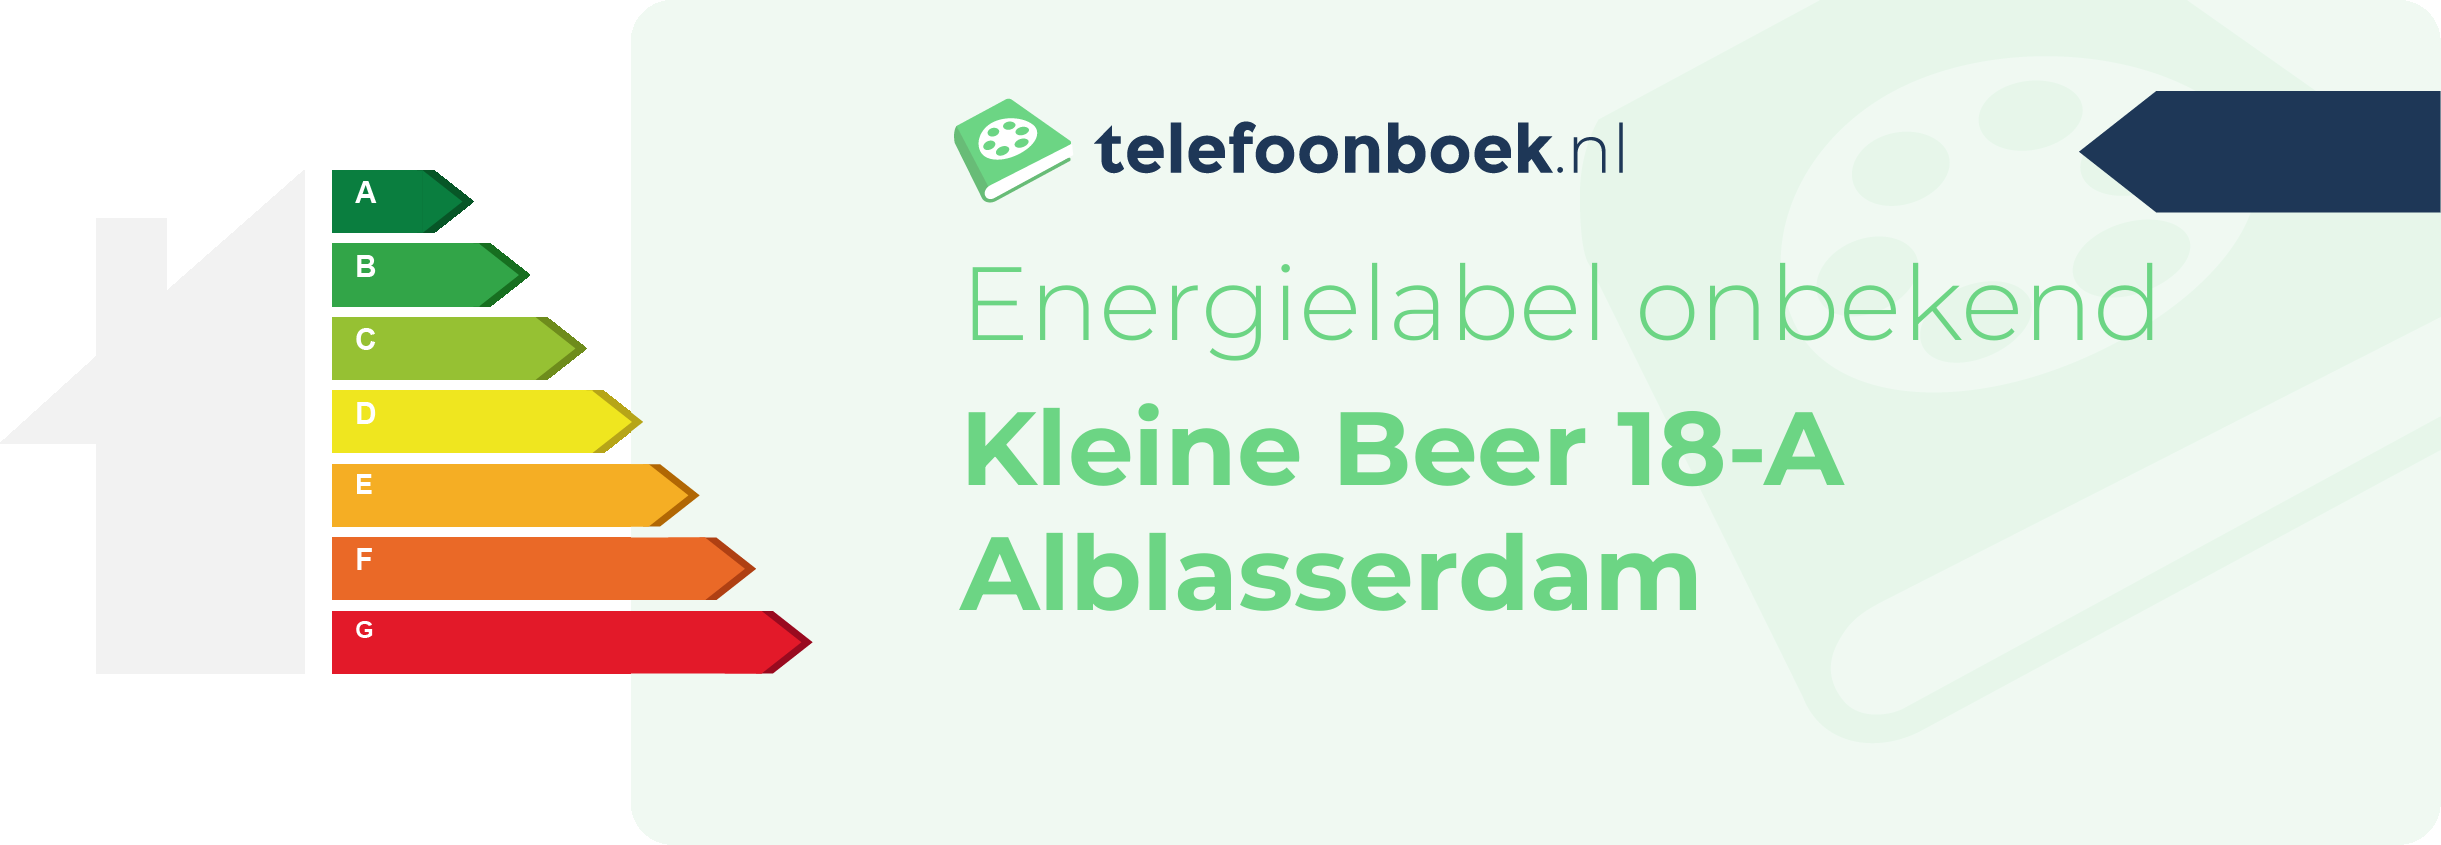 Energielabel Kleine Beer 18-A Alblasserdam